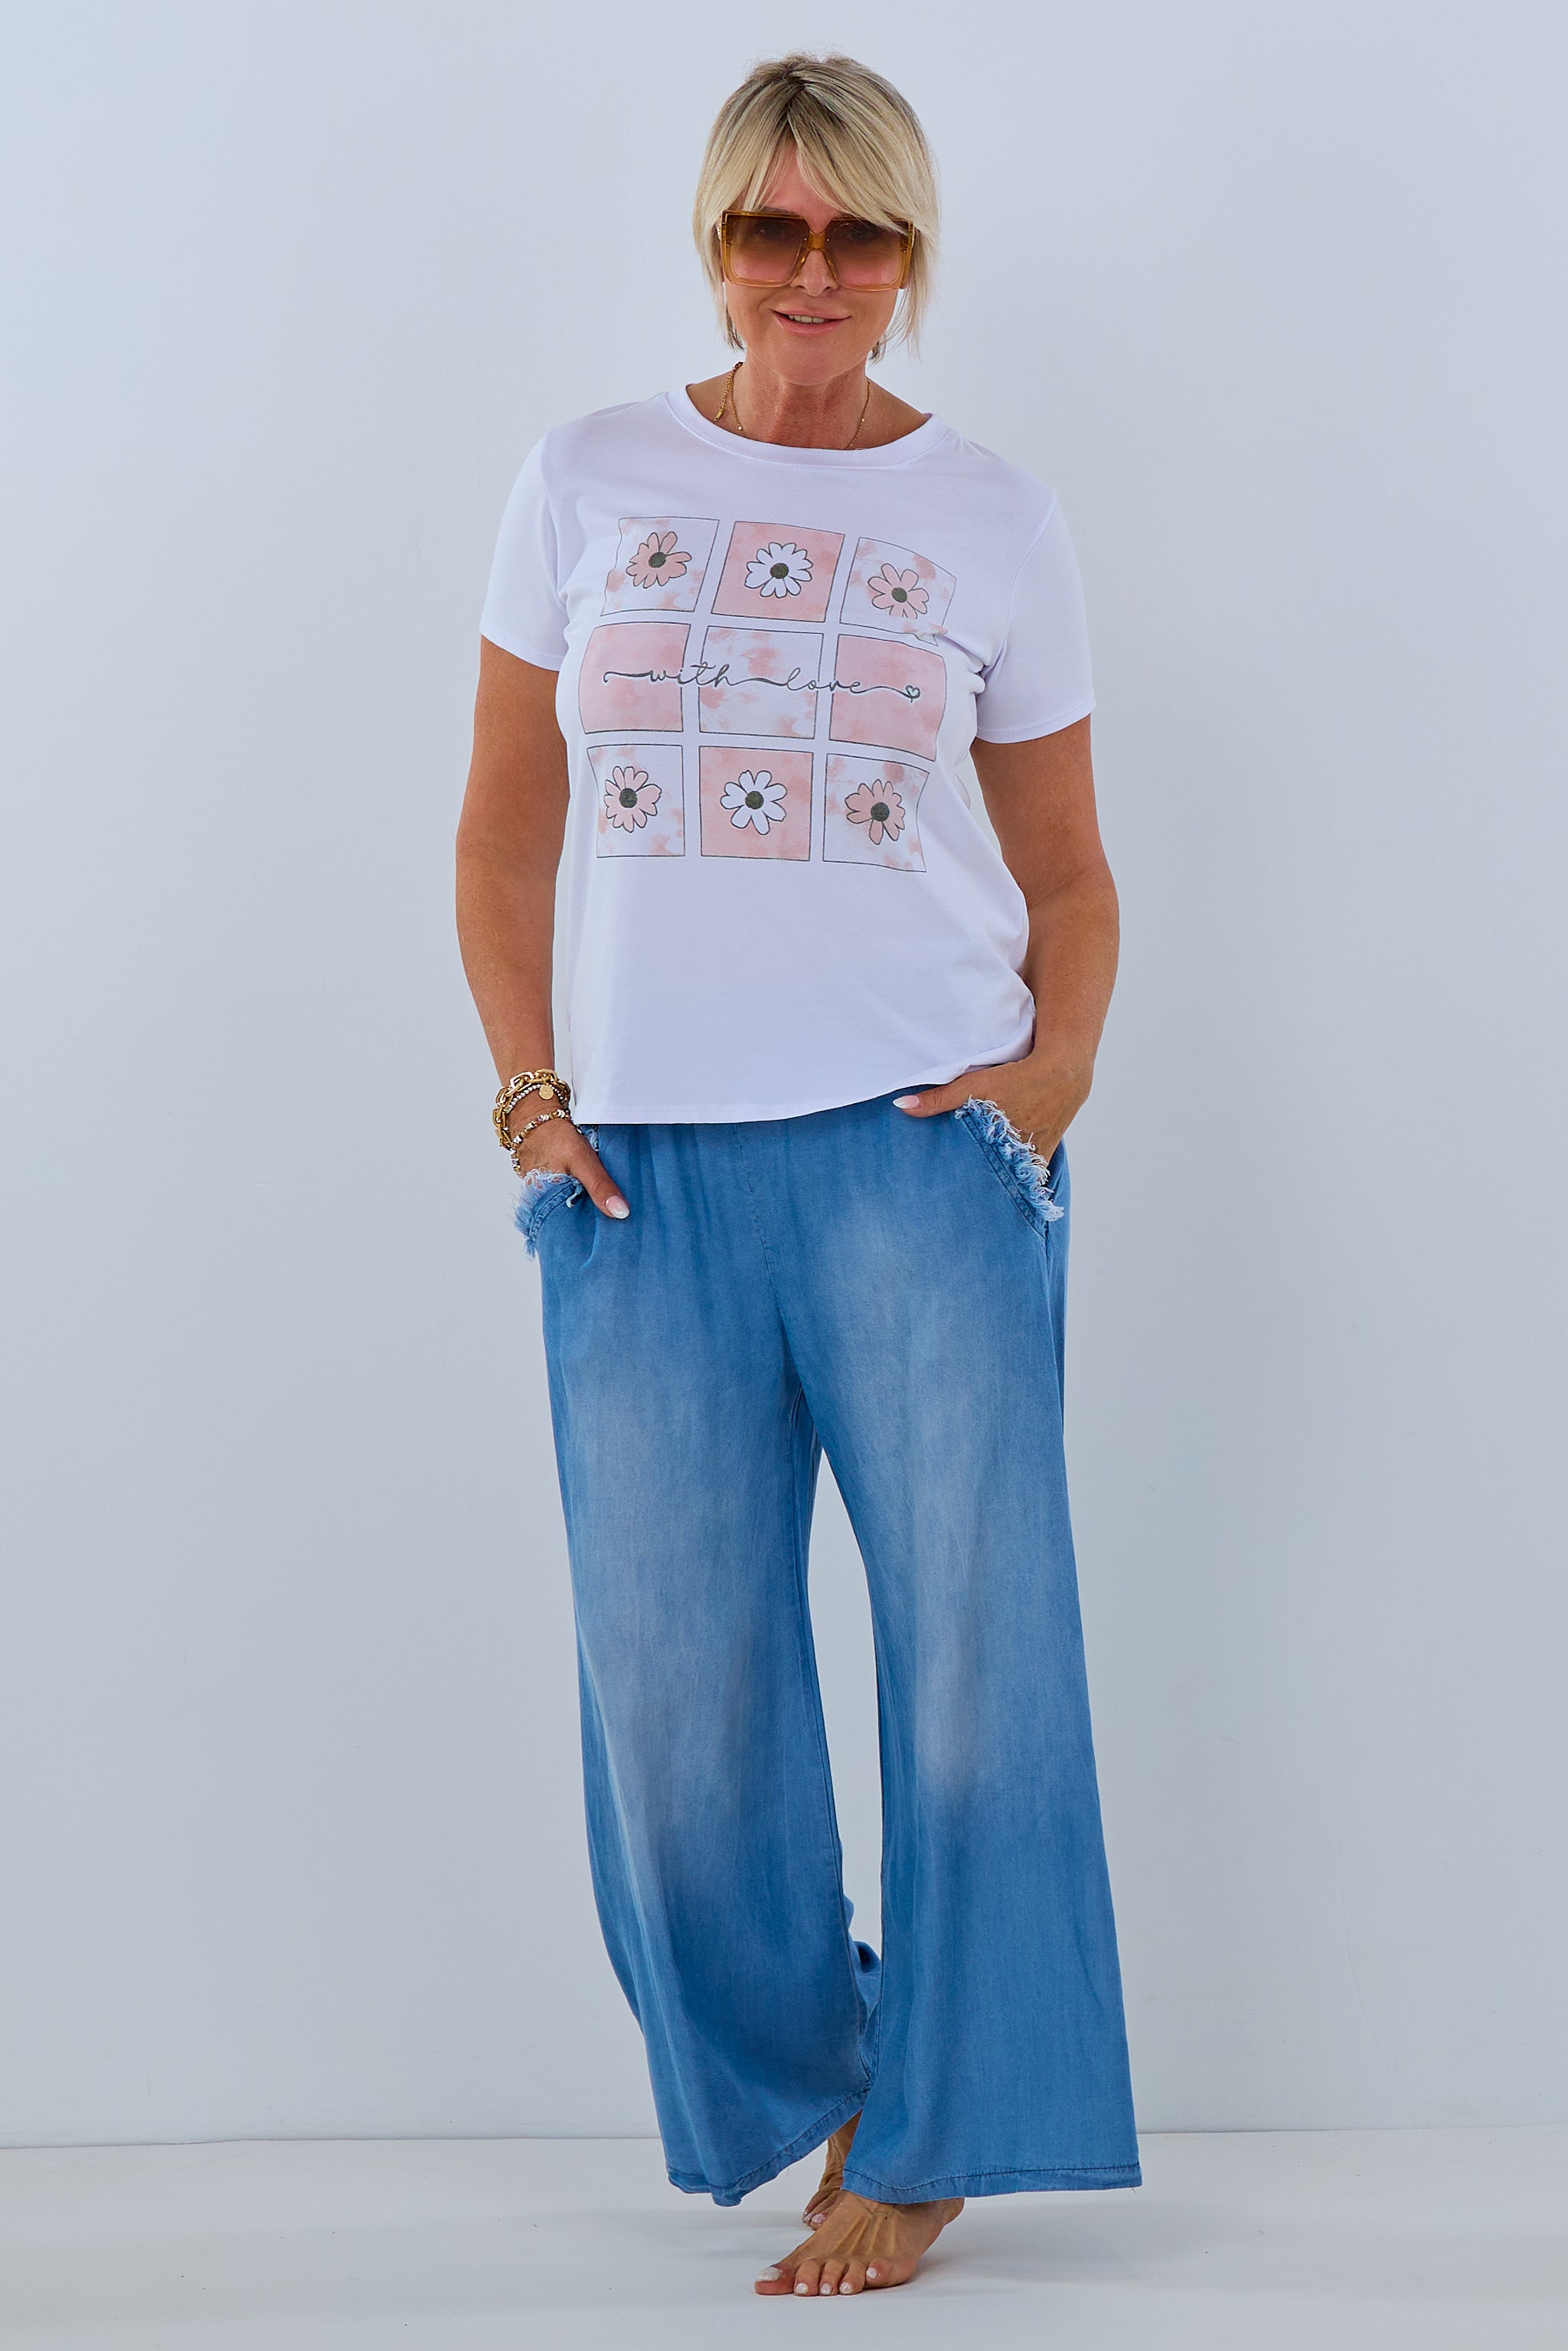 T-Shirt mit with love Druck, weiß-rosa von Trends & Lifestyle